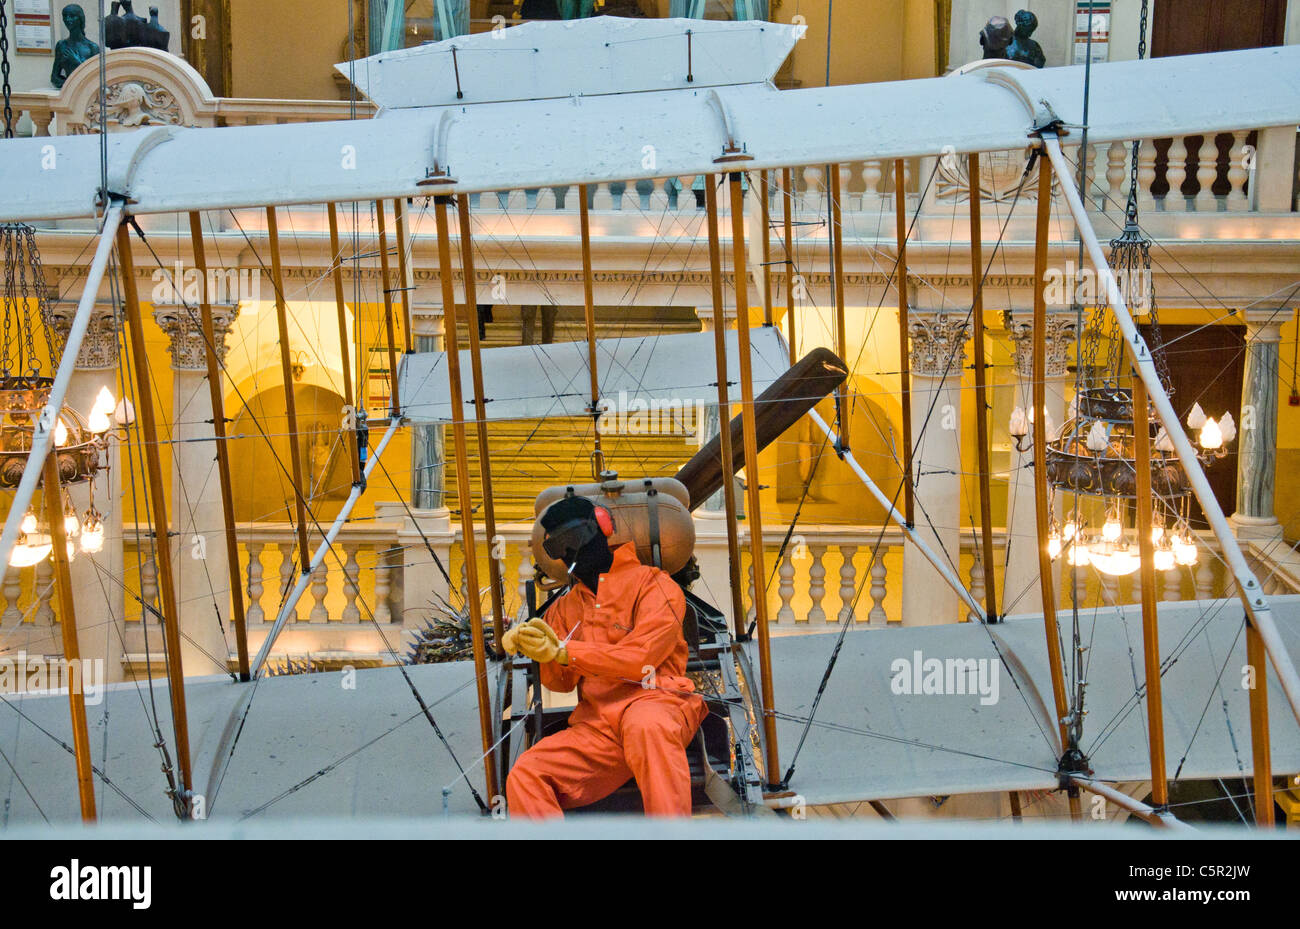 Instalación de Banksy con biplano antiguo preso de Guantánamo escapó volando que Foto de stock